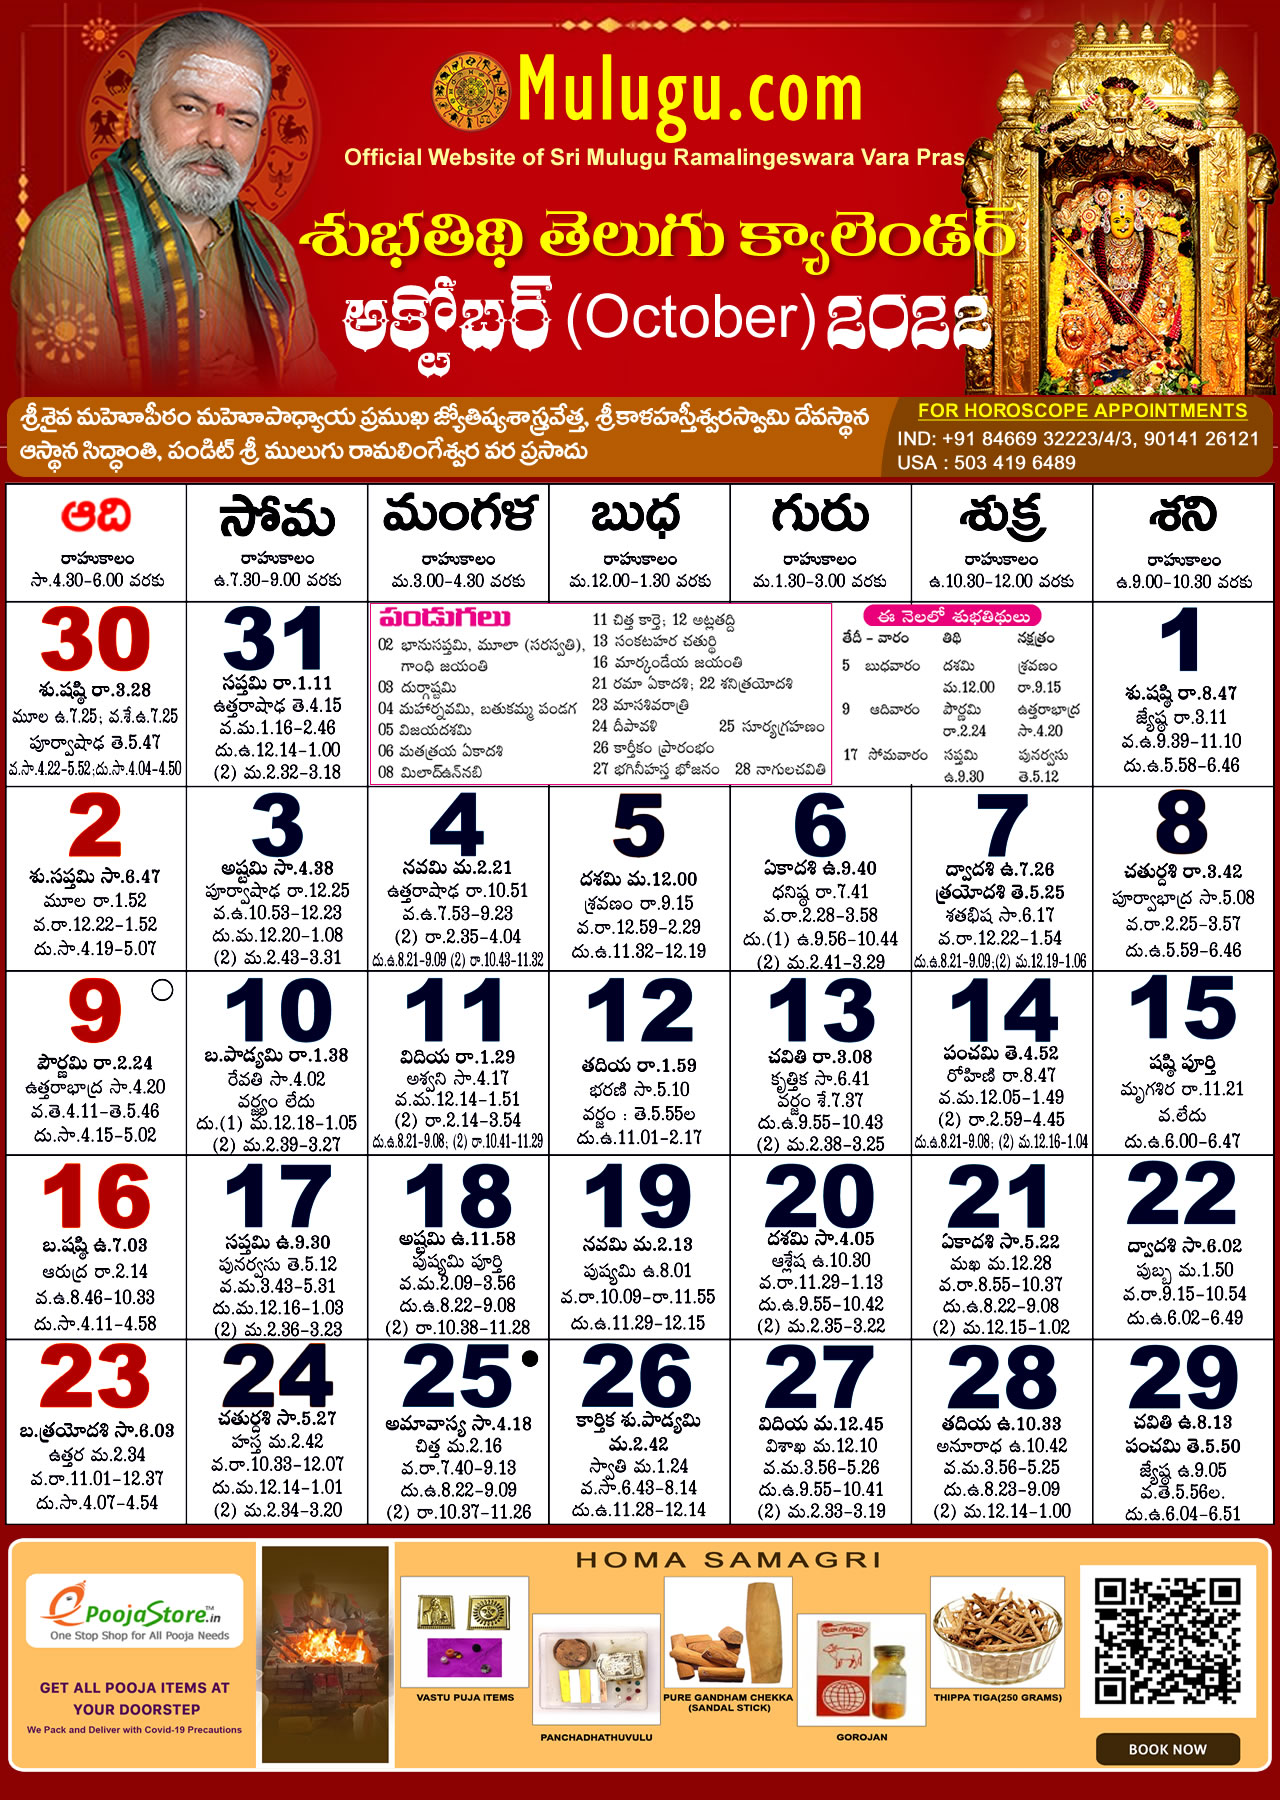 Telugu Calendar Chicago 2022 Subhathidi October Telugu Calendar 2022 | Telugu Calendar 2022 - 2023 |  Telugu Subhathidi Calendar 2022 | Calendar 2022 | Telugu Calendar 2022 |  Subhathidi Calendar 2022 | Chicago Calendar 2022 |